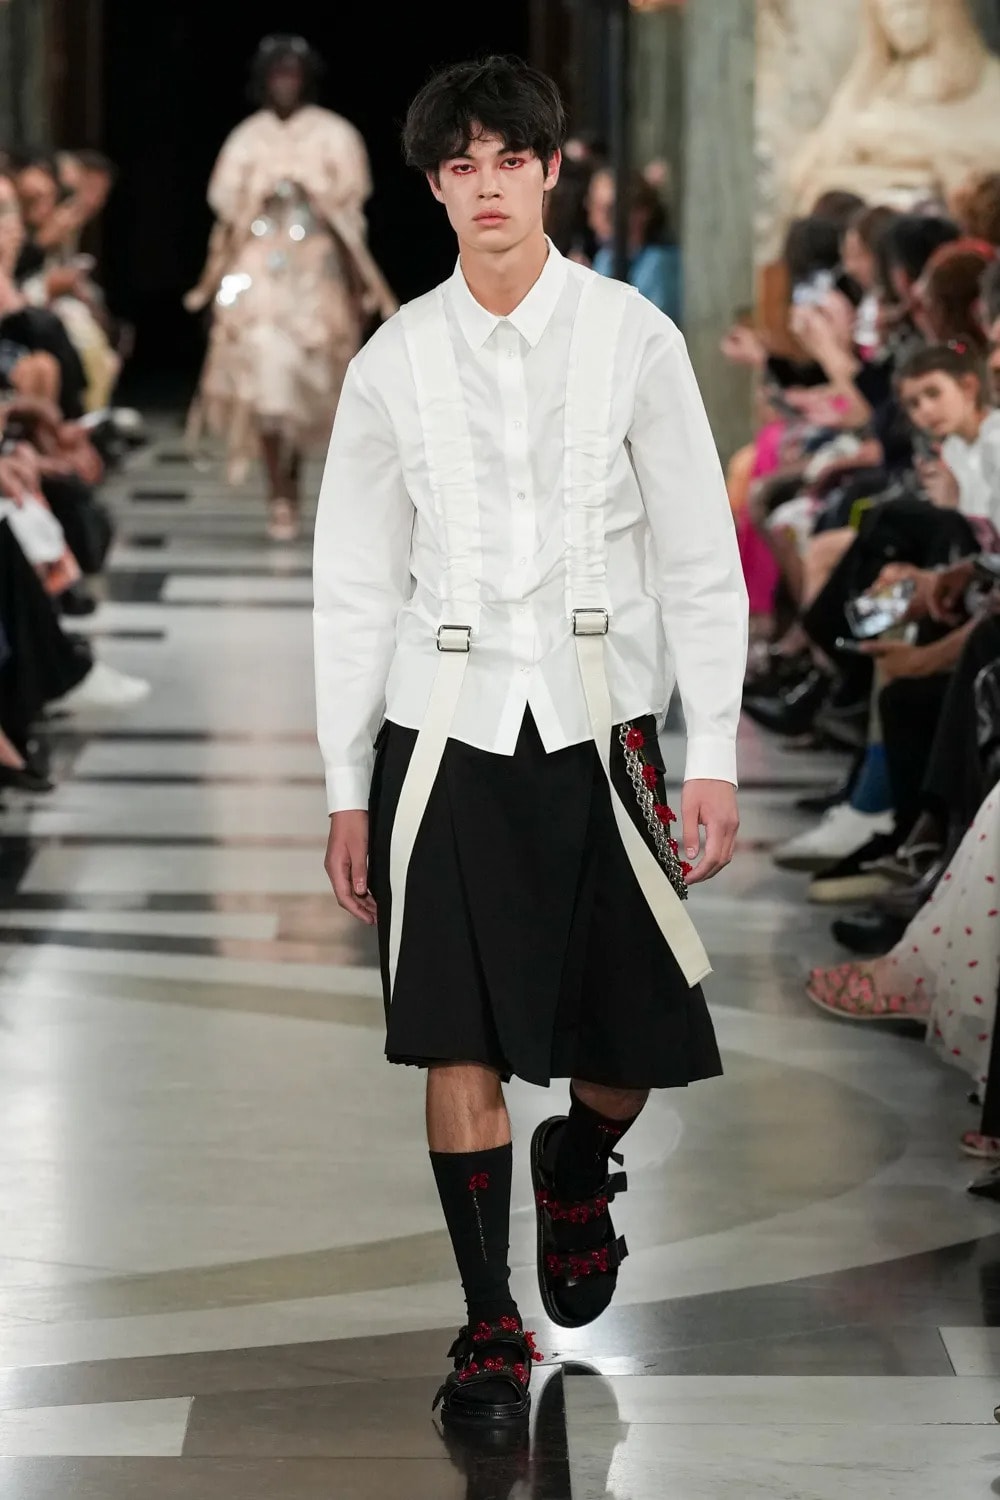 시몬 로샤가 브랜드 최초의 남성복 컬렉션을 공개했다, 진주, 프릴, 시몬로샤, 런던 패션위크